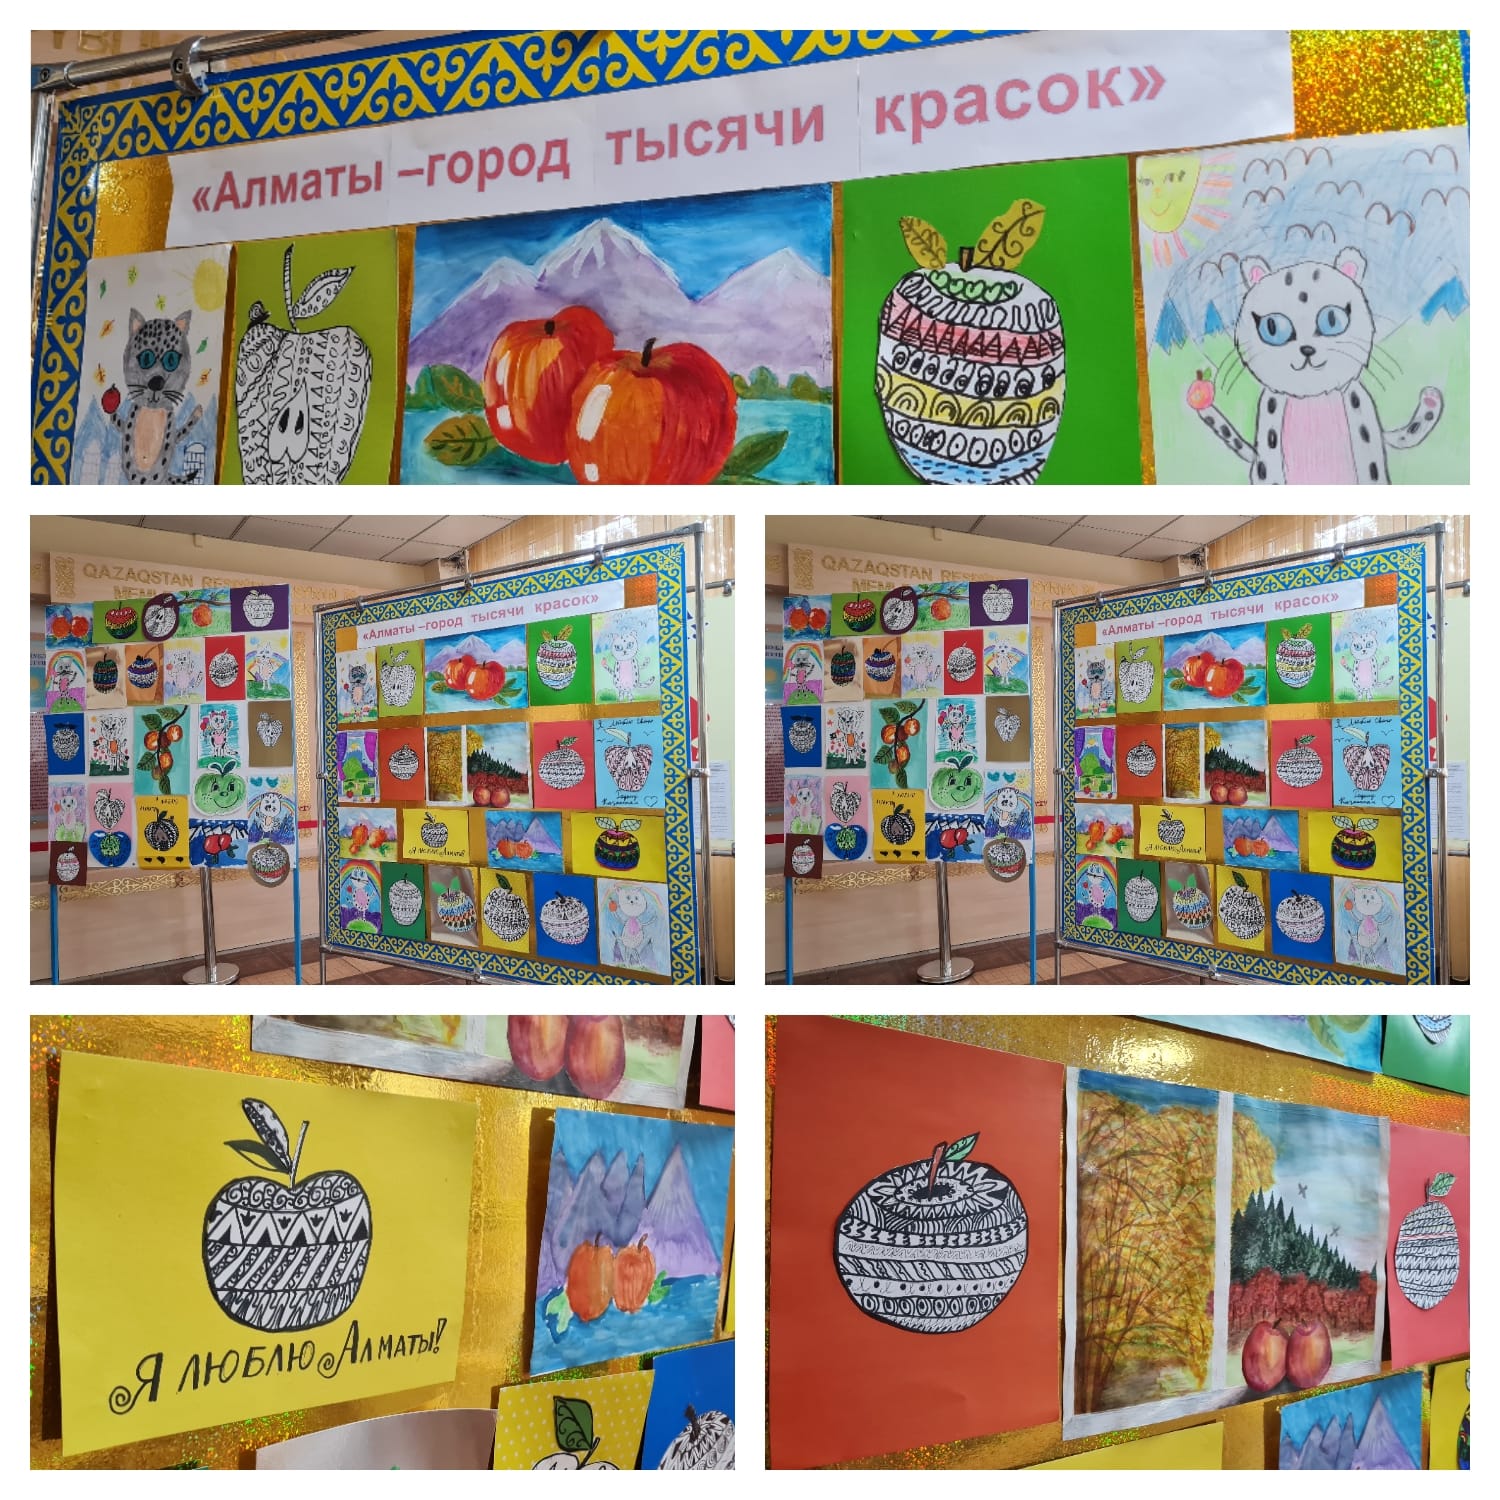 В день города учительница изобразительного искусства, Кобрина А.А, подготовила волшебный стенд с детскими рисунками на тему "Алматы – город тысяча красок" в фое нашей школы!